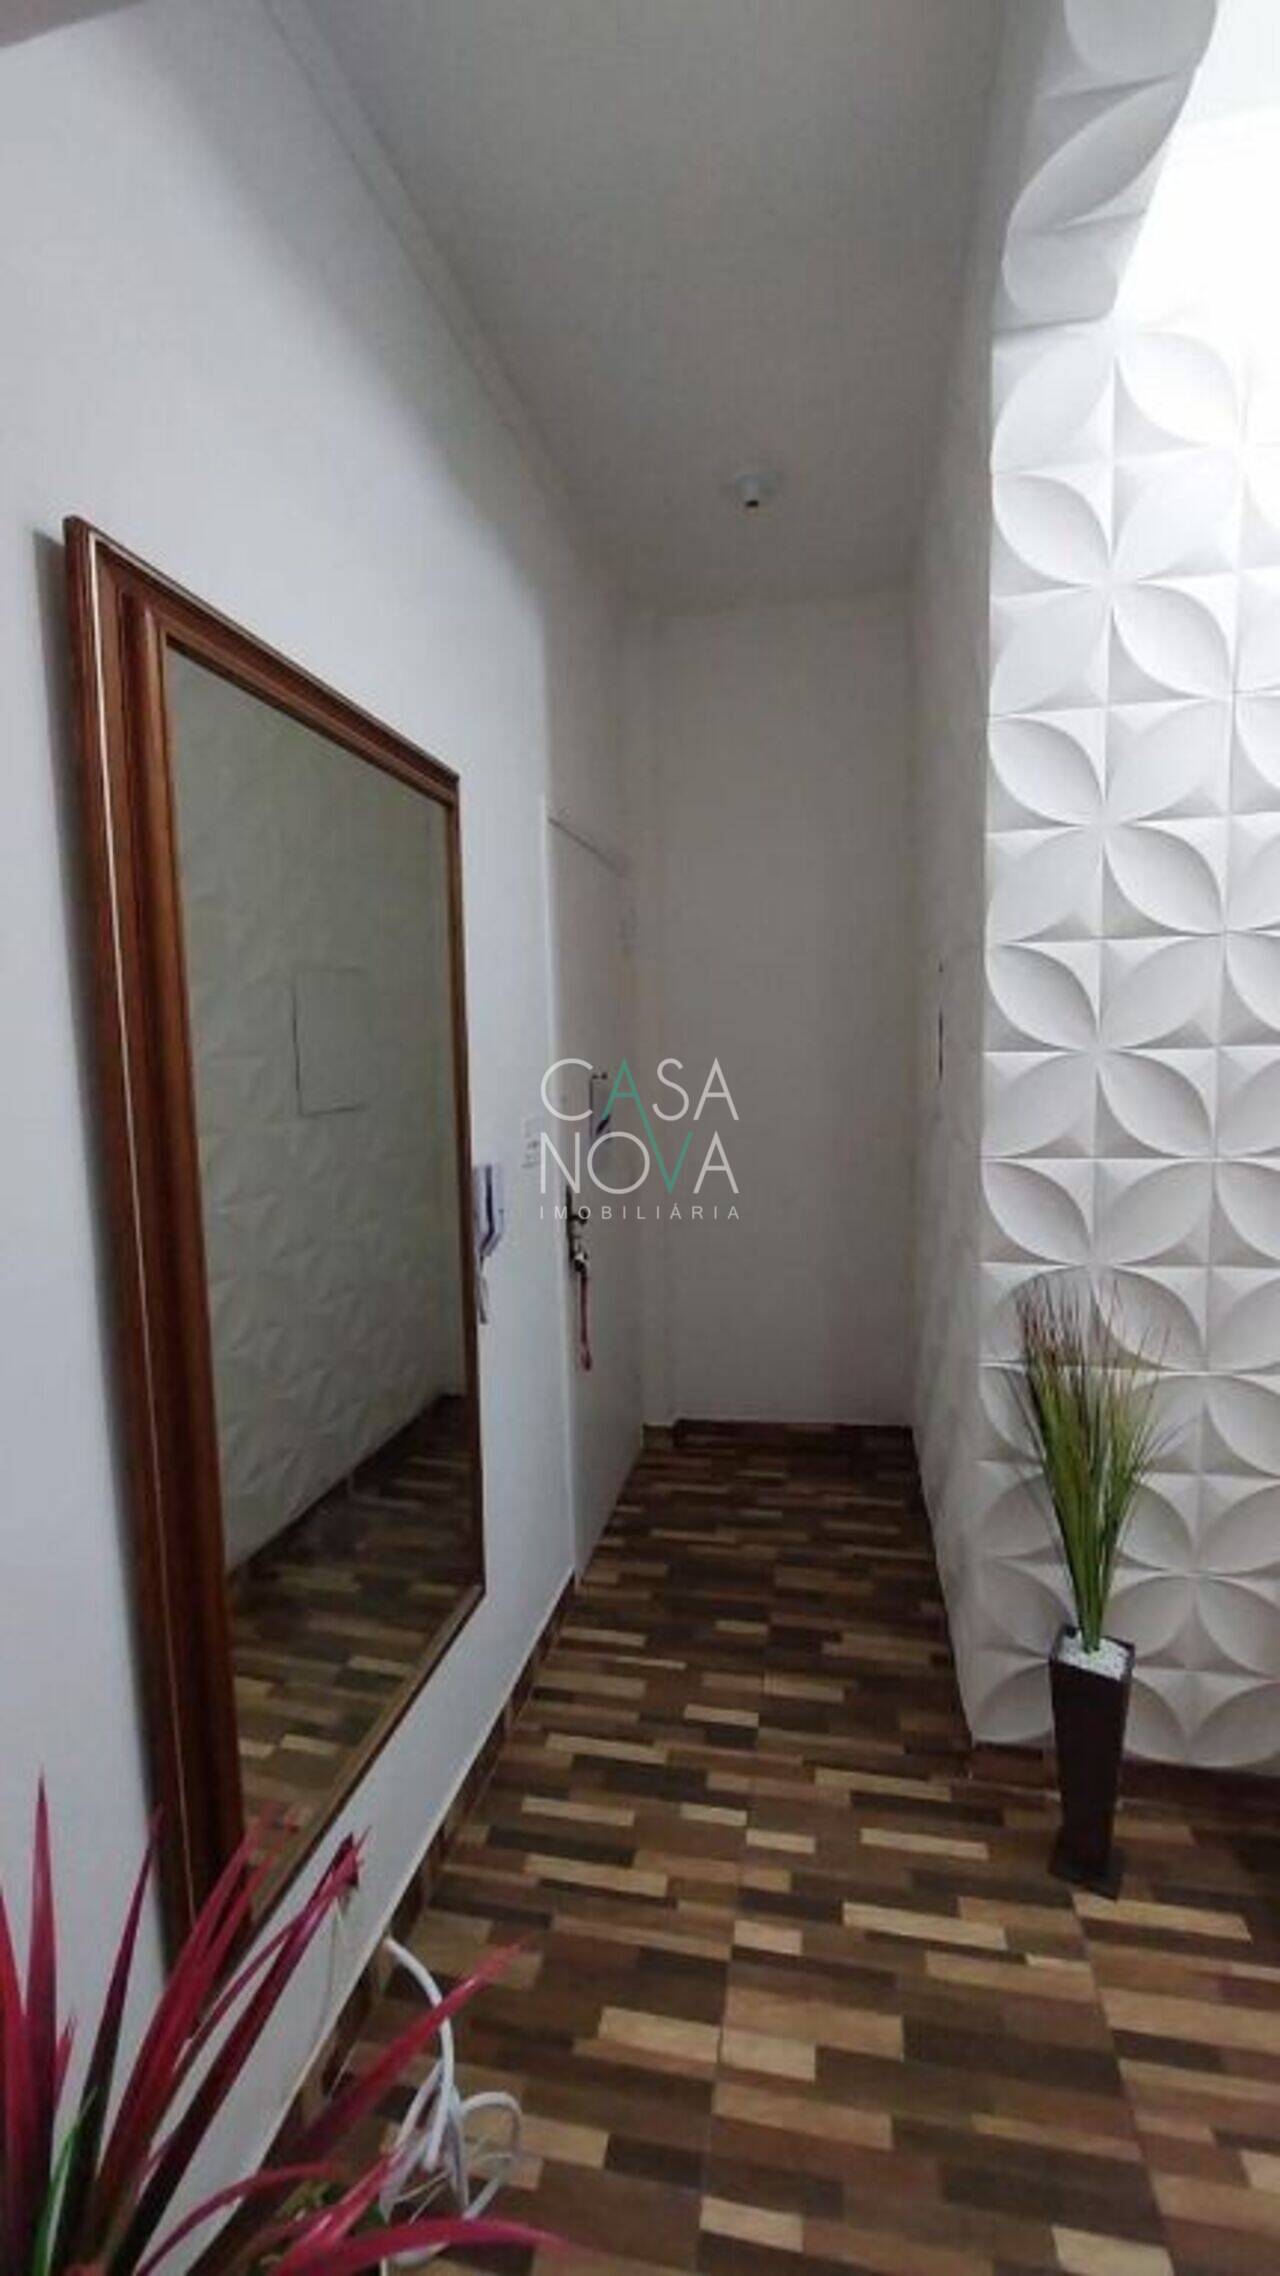 Apartamento Embaré, Santos - SP